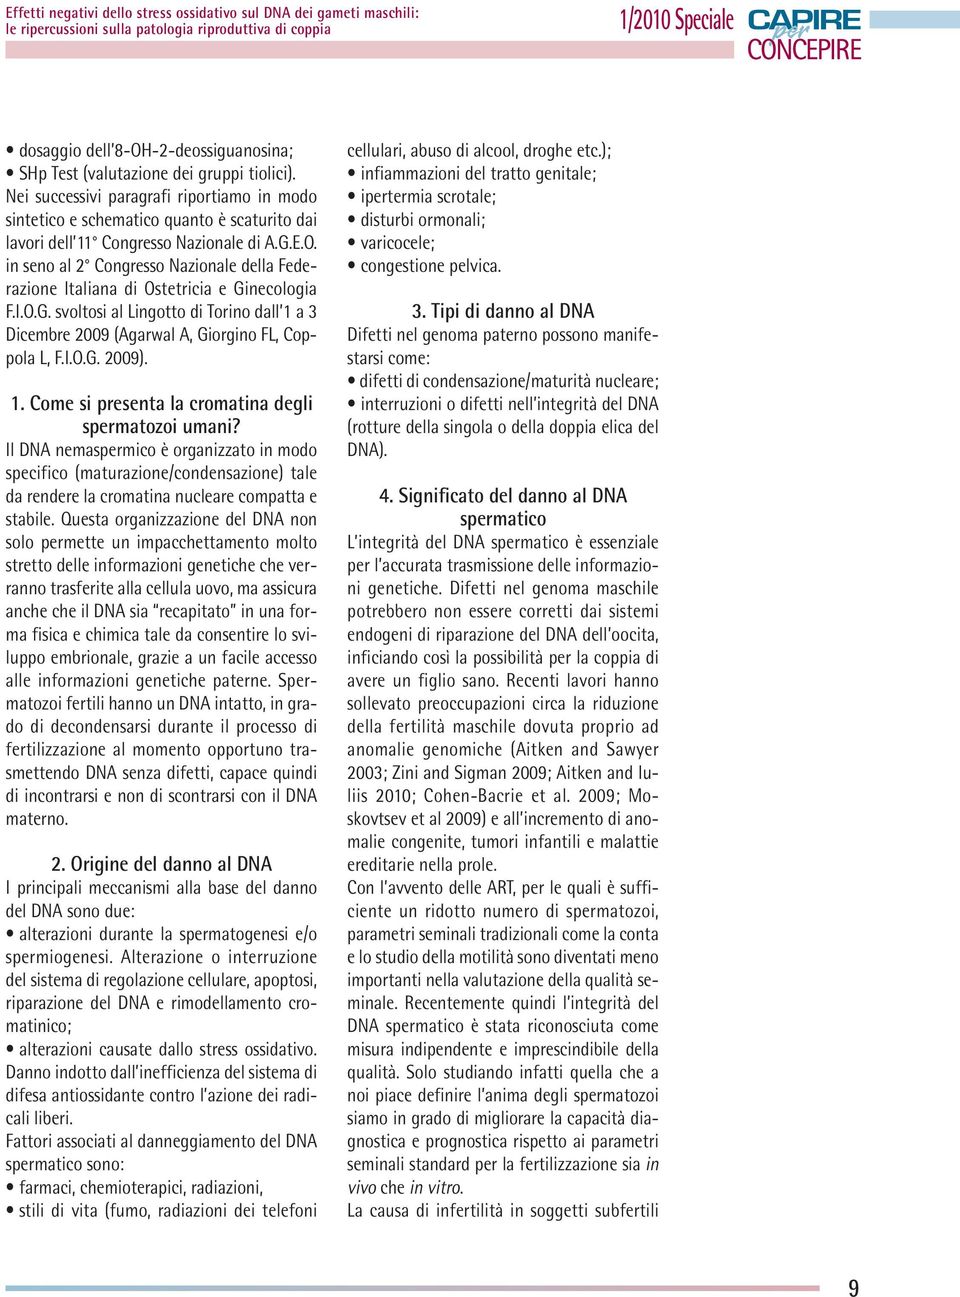 in seno al 2 Congresso Nazionale della Federazione Italiana di Ostetricia e Ginecologia F.I.O.G. svoltosi al Lingotto di Torino dall 1 a 3 Dicembre 2009 (Agarwal A, Giorgino FL, Coppola L, F.I.O.G. 2009).